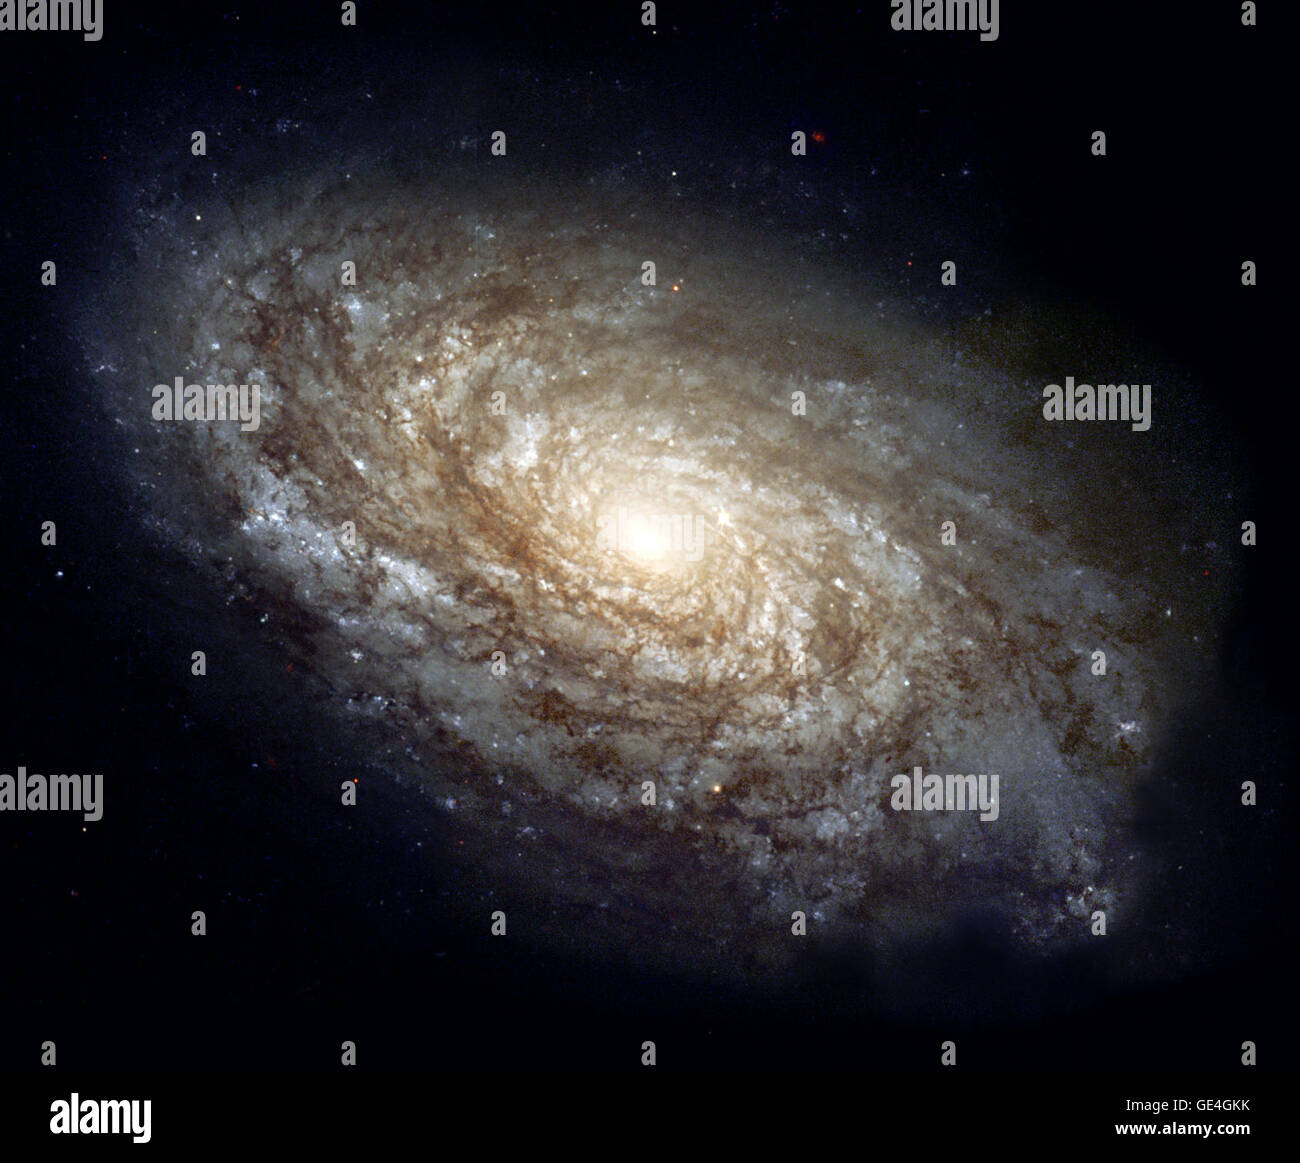 (3 juin 1999) En 1995, la galaxie spirale NGC 4414 majestueux a été imagé par le télescope spatial Hubble dans le cadre de la TVH sur la clé du projet d'échelle de distance extragalactique. Une équipe internationale d'astronomes conduite par Wendy Freedman des observatoires de la Carnegie Institution of Washington, cette galaxie observée sur 13 occasions différentes au cours d'une période de deux mois. Les images ont été obtenues avec le télescope Wide Field Planetary Camera 2 (WFPC2) à travers trois filtres de couleur différentes. En fonction de leur découverte et les mesures de luminosité prudent d'étoiles variables dans NGC 4414, le projet clé astro Banque D'Images